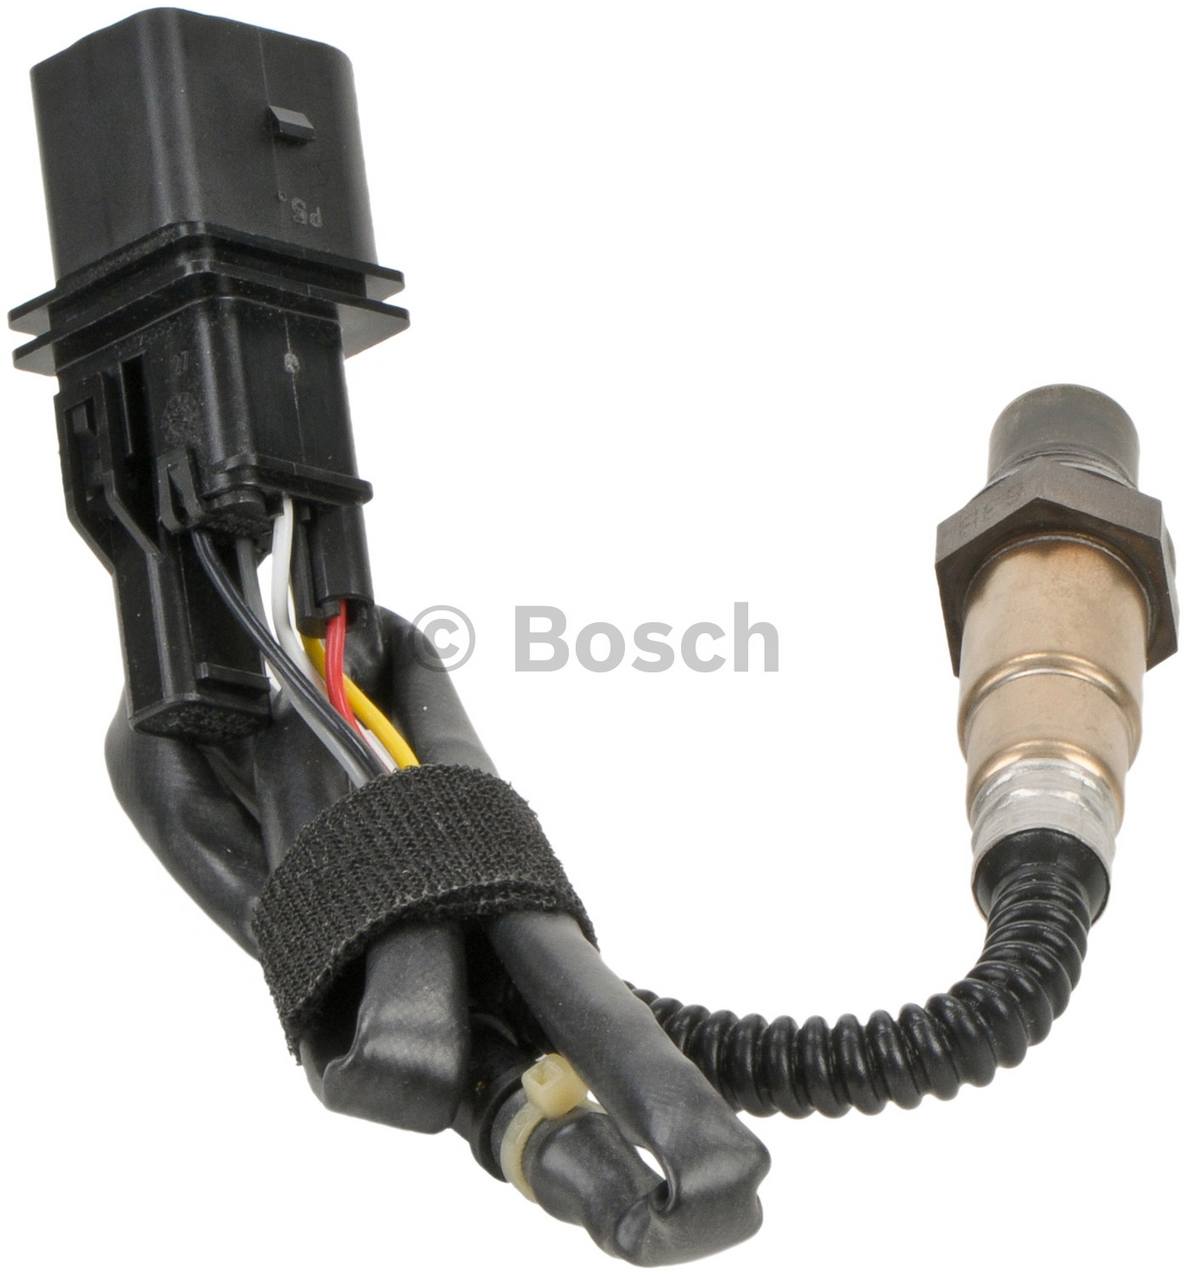 BMW Oxygen Sensor - Front (Cyl 5-8) 11787516149 - Bosch 17160